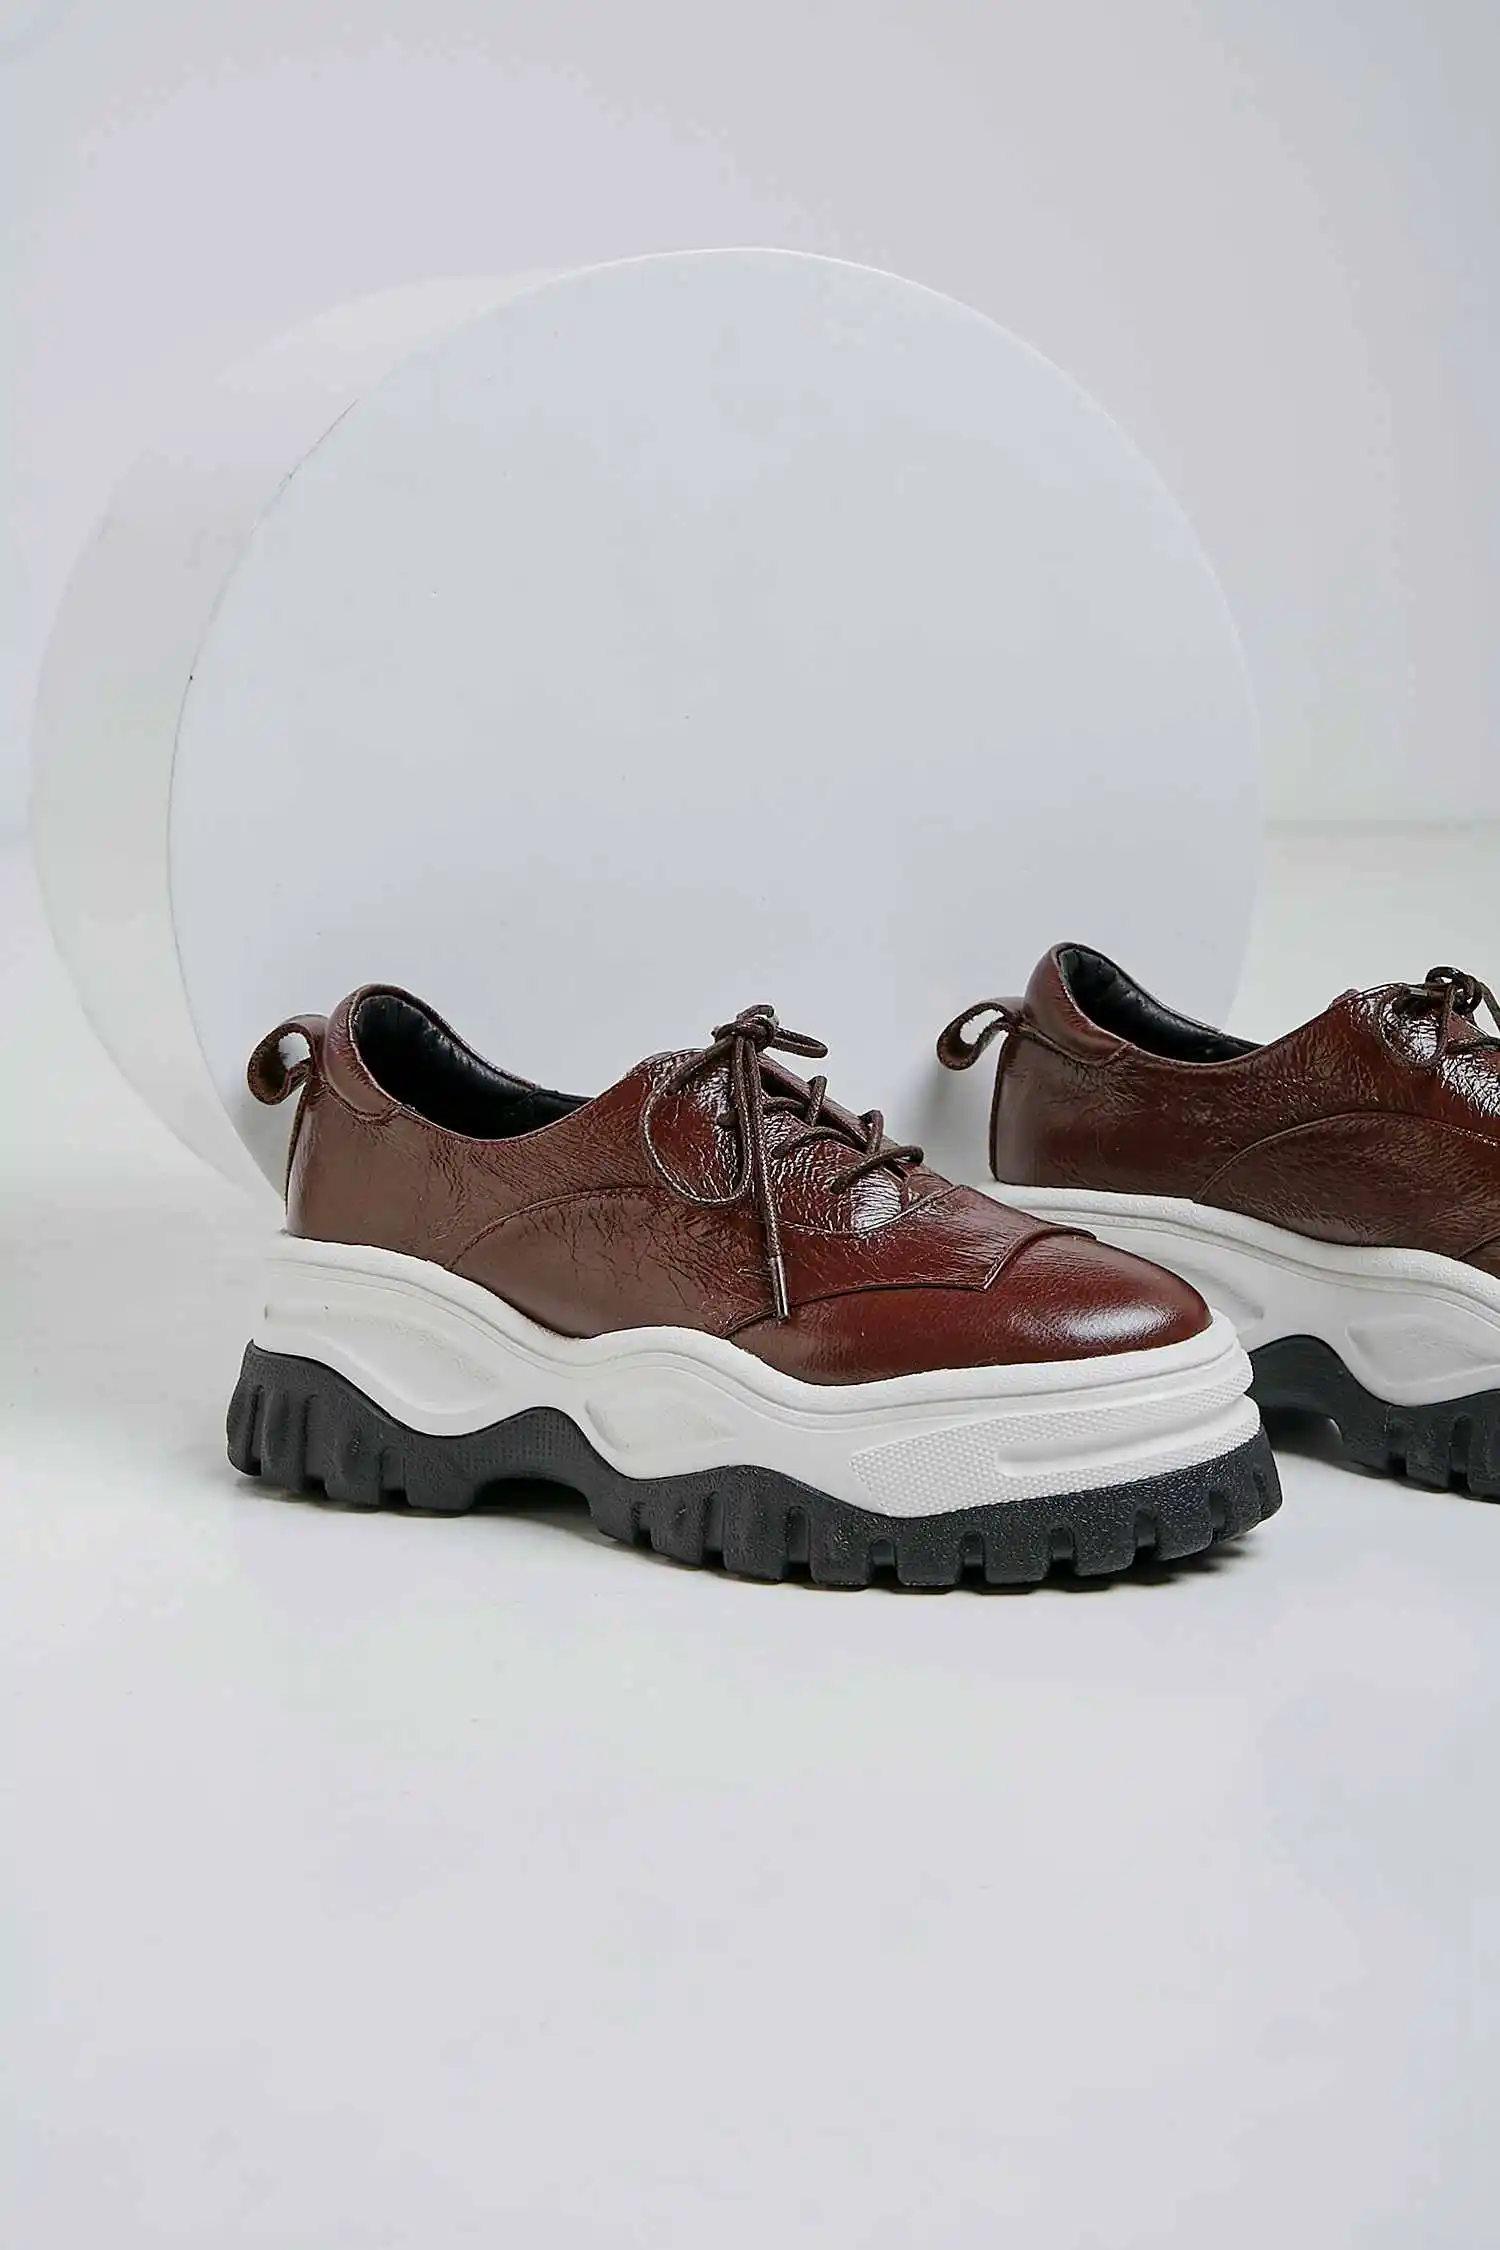 Krazing Pot/модные кроссовки из натуральной кожи со шнуровкой в британском стиле на толстой подошве коричневого цвета с круглым носком; Европейская Вулканизированная обувь; L36